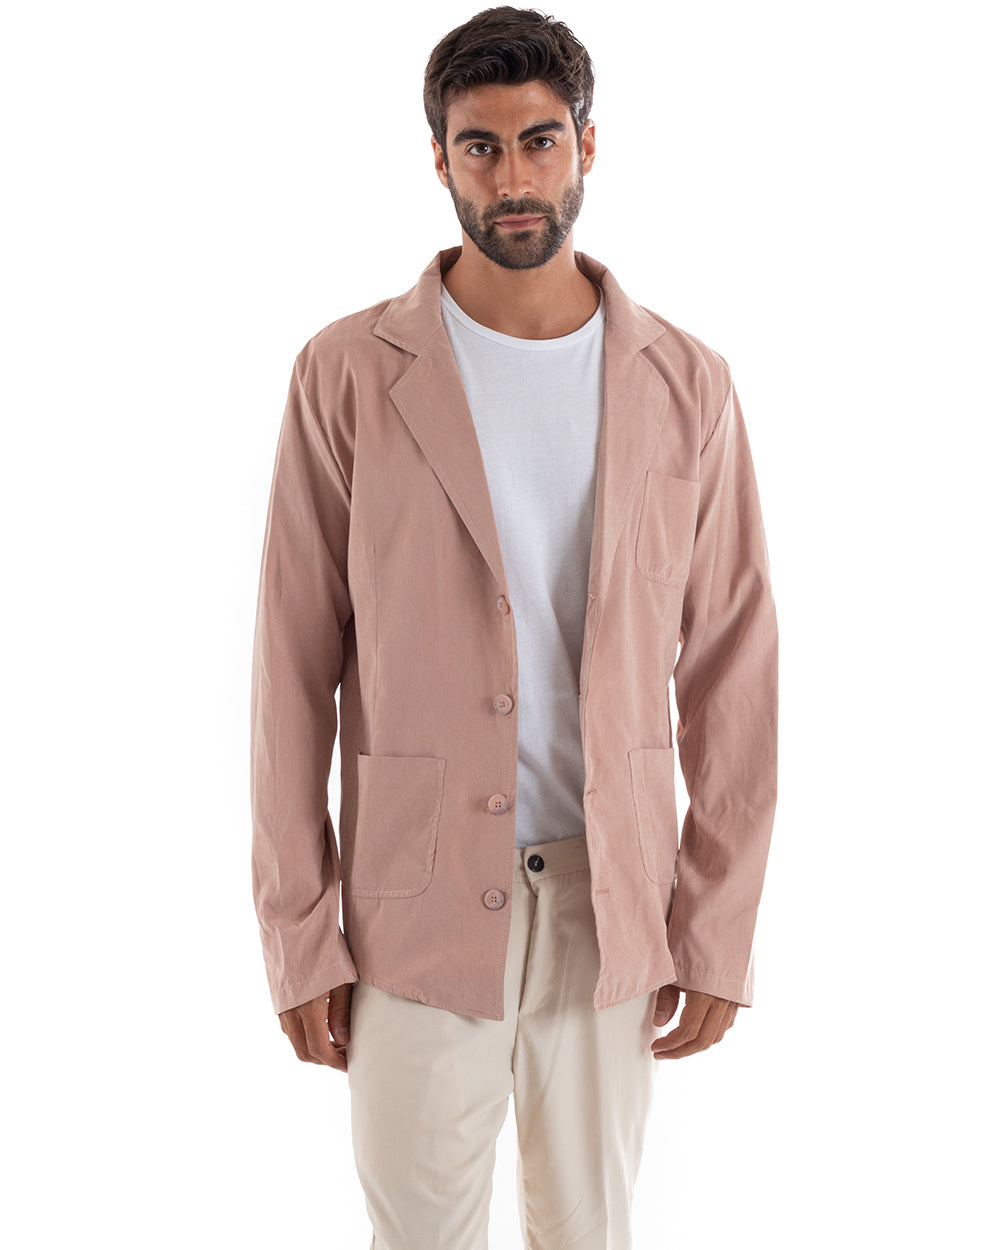 Men's Shirt With Collar Saharan Jacket Long Sleeve Pink Cotton GIOSAL-C2459A